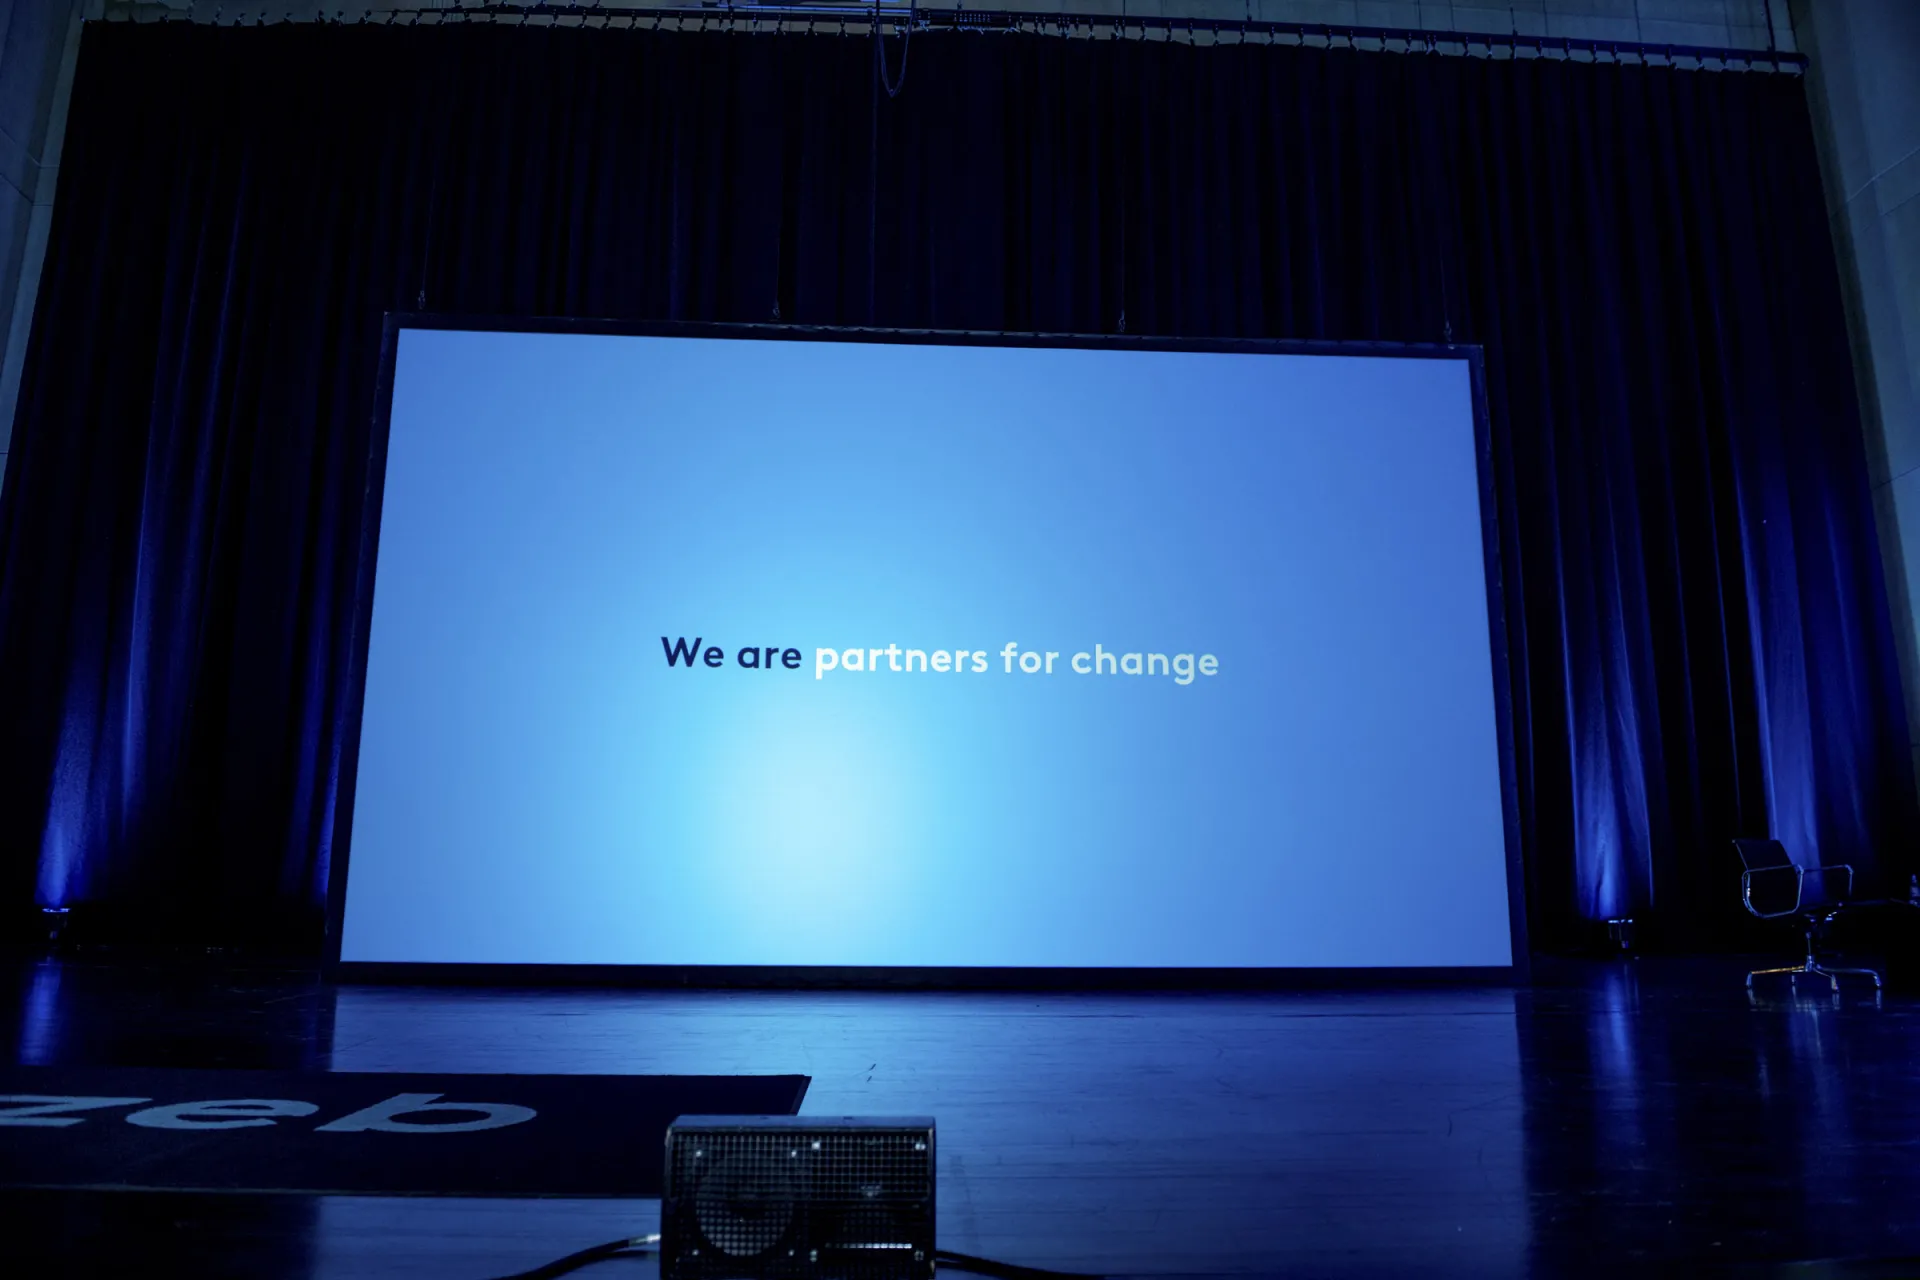 Bildschirm auf einer Bühne mit den Worten "Partners for change"